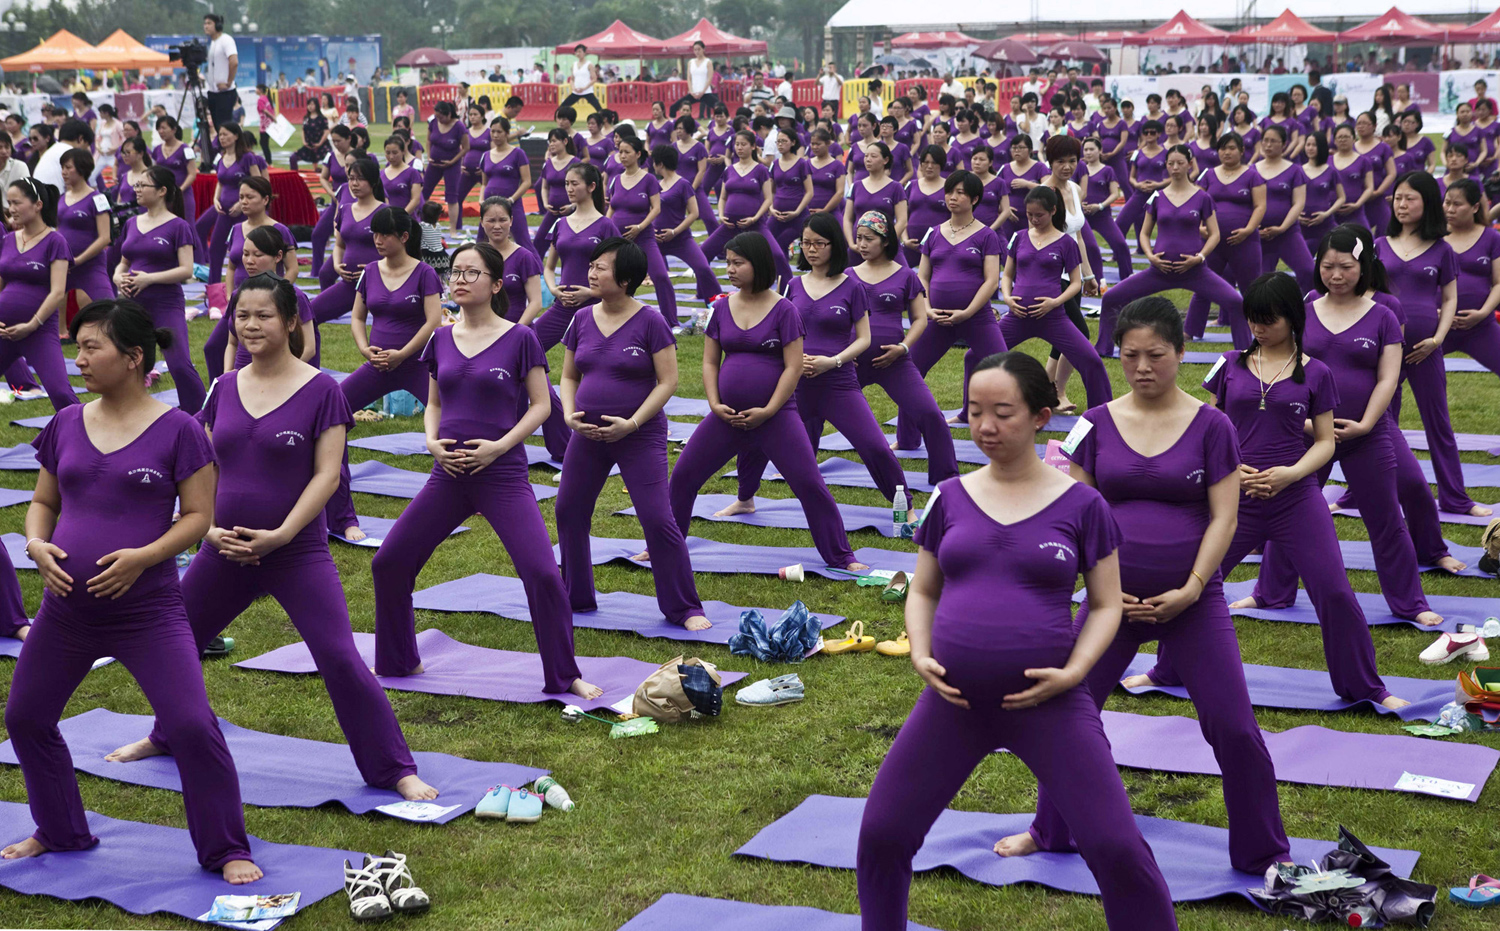 Бременни жени практикуват йога, опитвайки да подобрят световения рекорд на Гинес за най-голямия Йога клас за бременни, в Чанша, провинция Хунан, на 8 юни 2014 г. общо 505 бременни жени участват в йога класа заедно за 37 минути и 28секунди, който подобрява настоящия Световен рекорд на Гинес, поставен в Шенжен през 2013 г. с 423 жени, съобщават местните медии